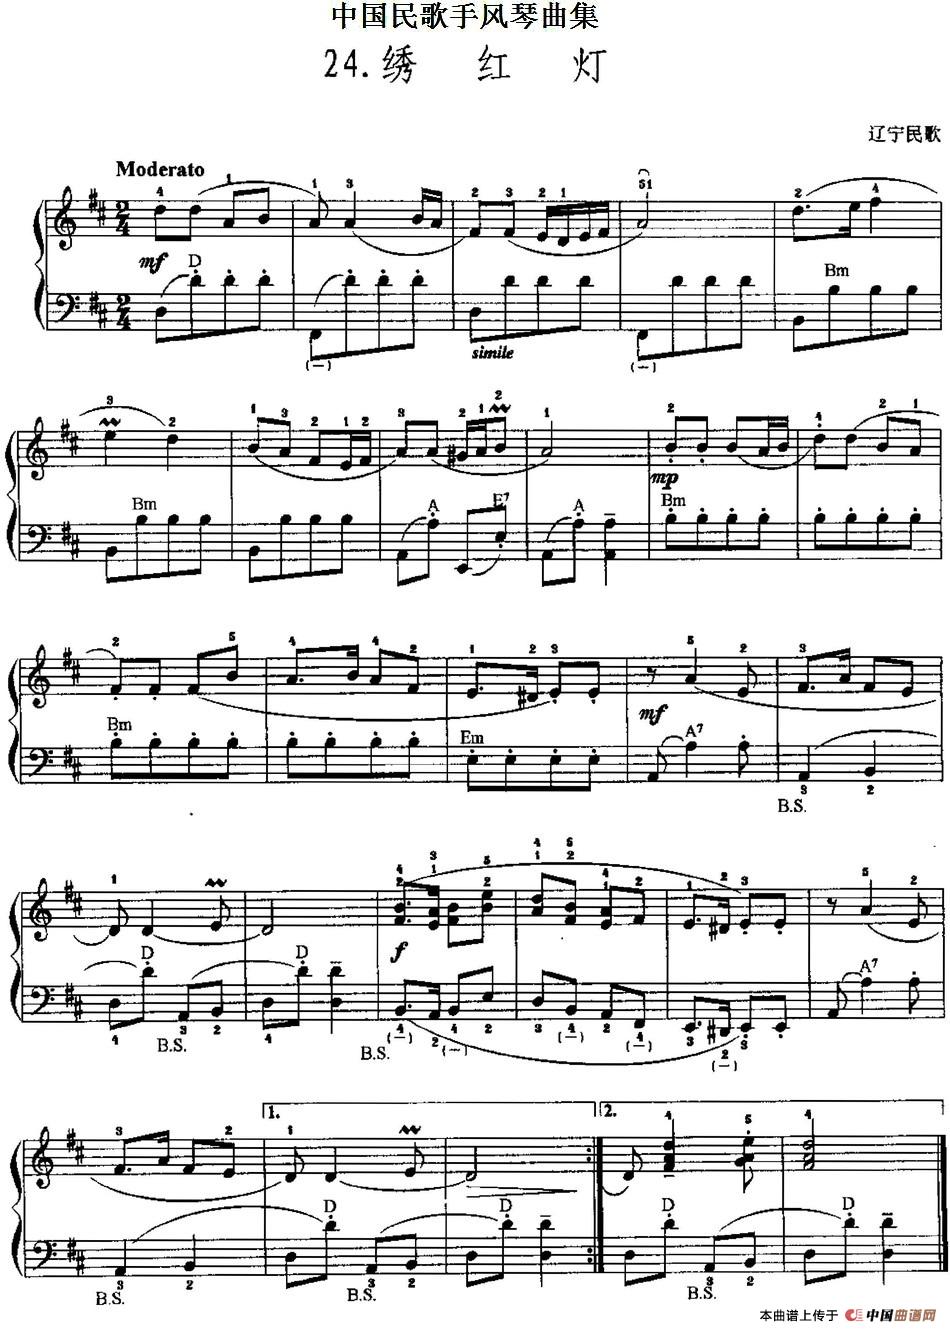 中国民歌手风琴曲集：24、绣红灯手风琴谱（线简谱对照、带指法版）